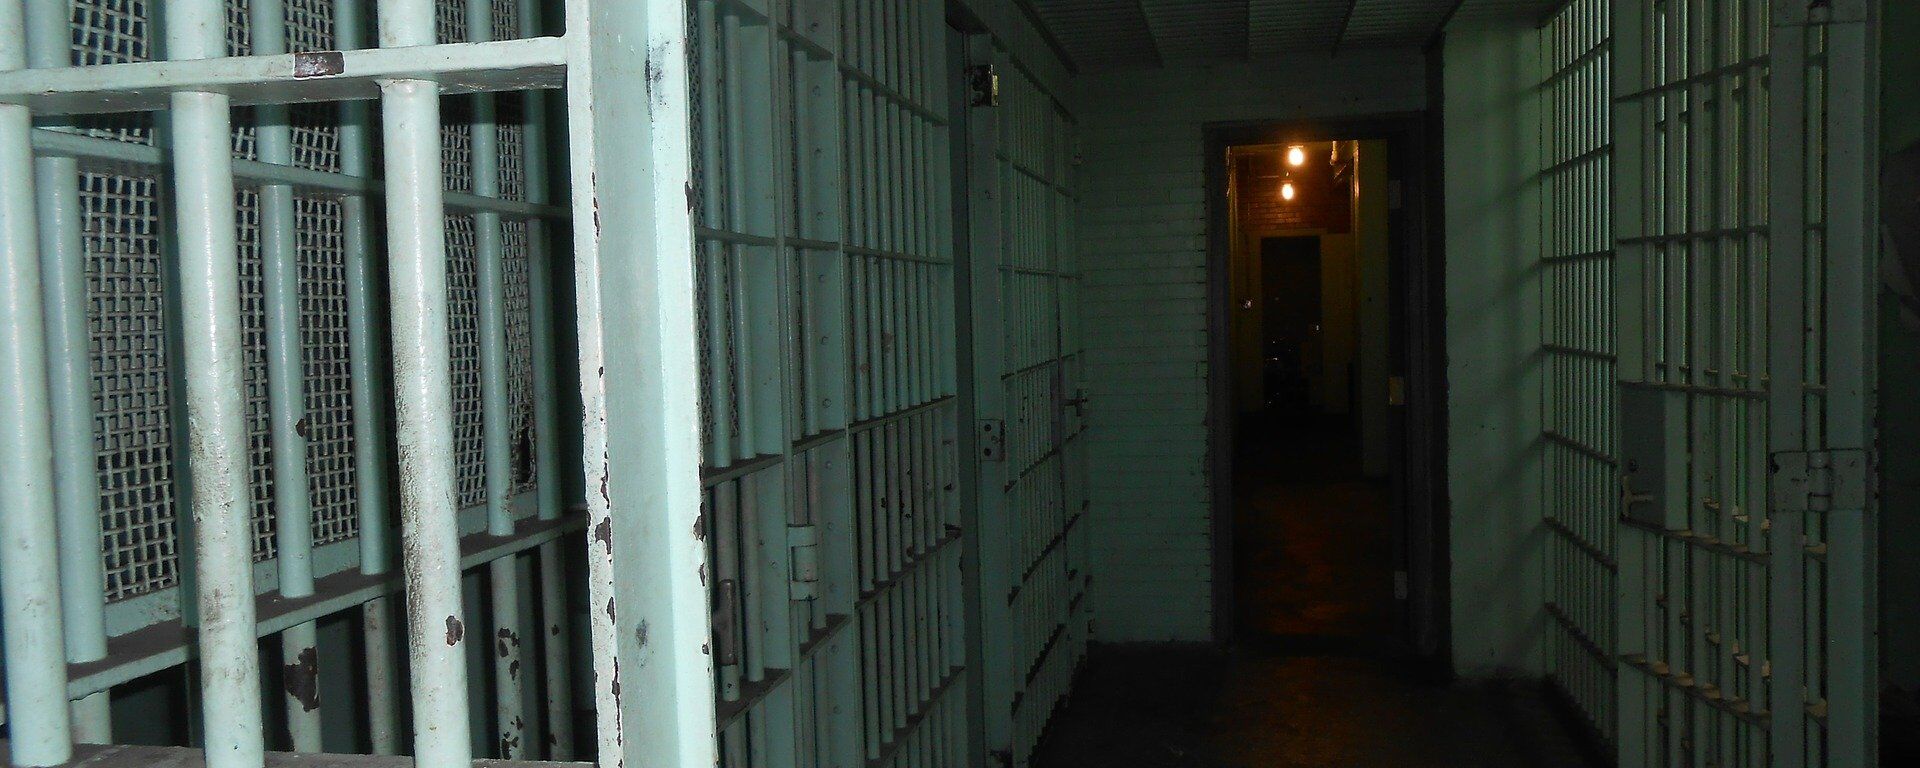 El pasillo de una cárcel (imagen referencial) - Sputnik Mundo, 1920, 03.09.2021